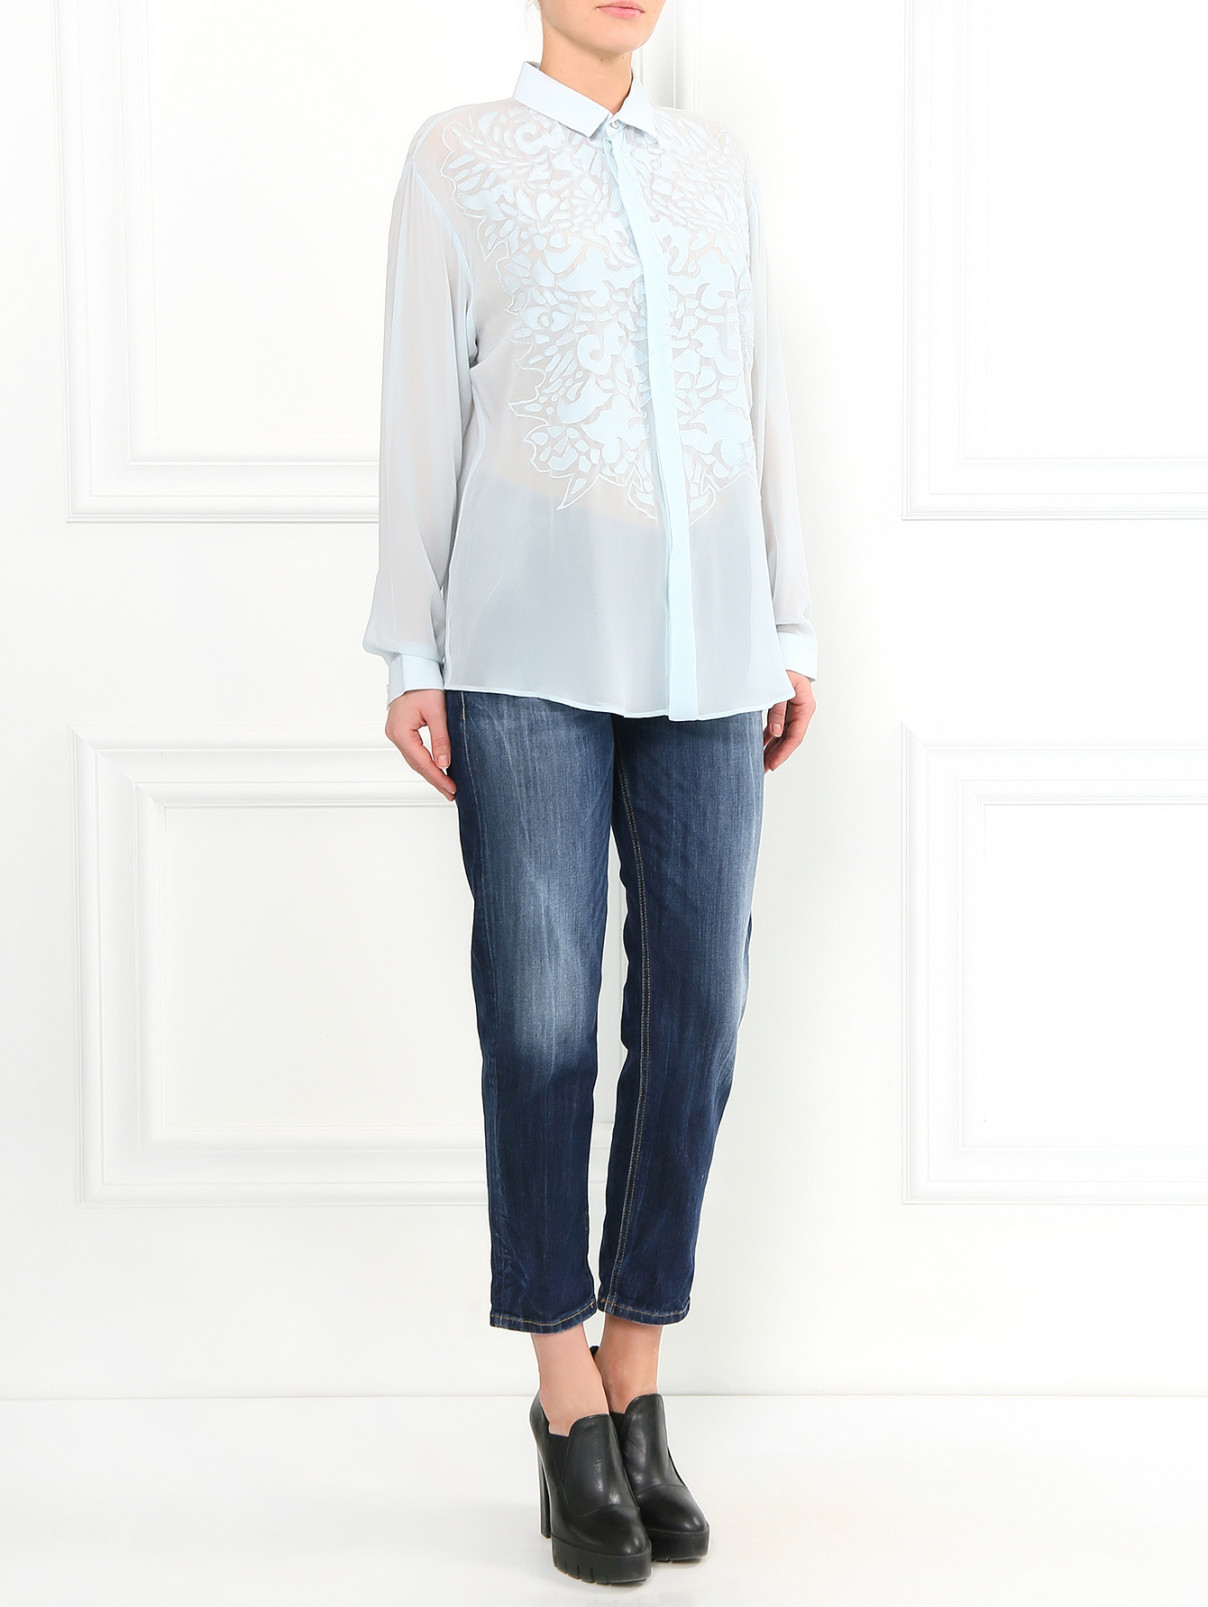 Шелковая блуза с вышивкой Barbara Bui  –  Модель Общий вид  – Цвет:  Зеленый